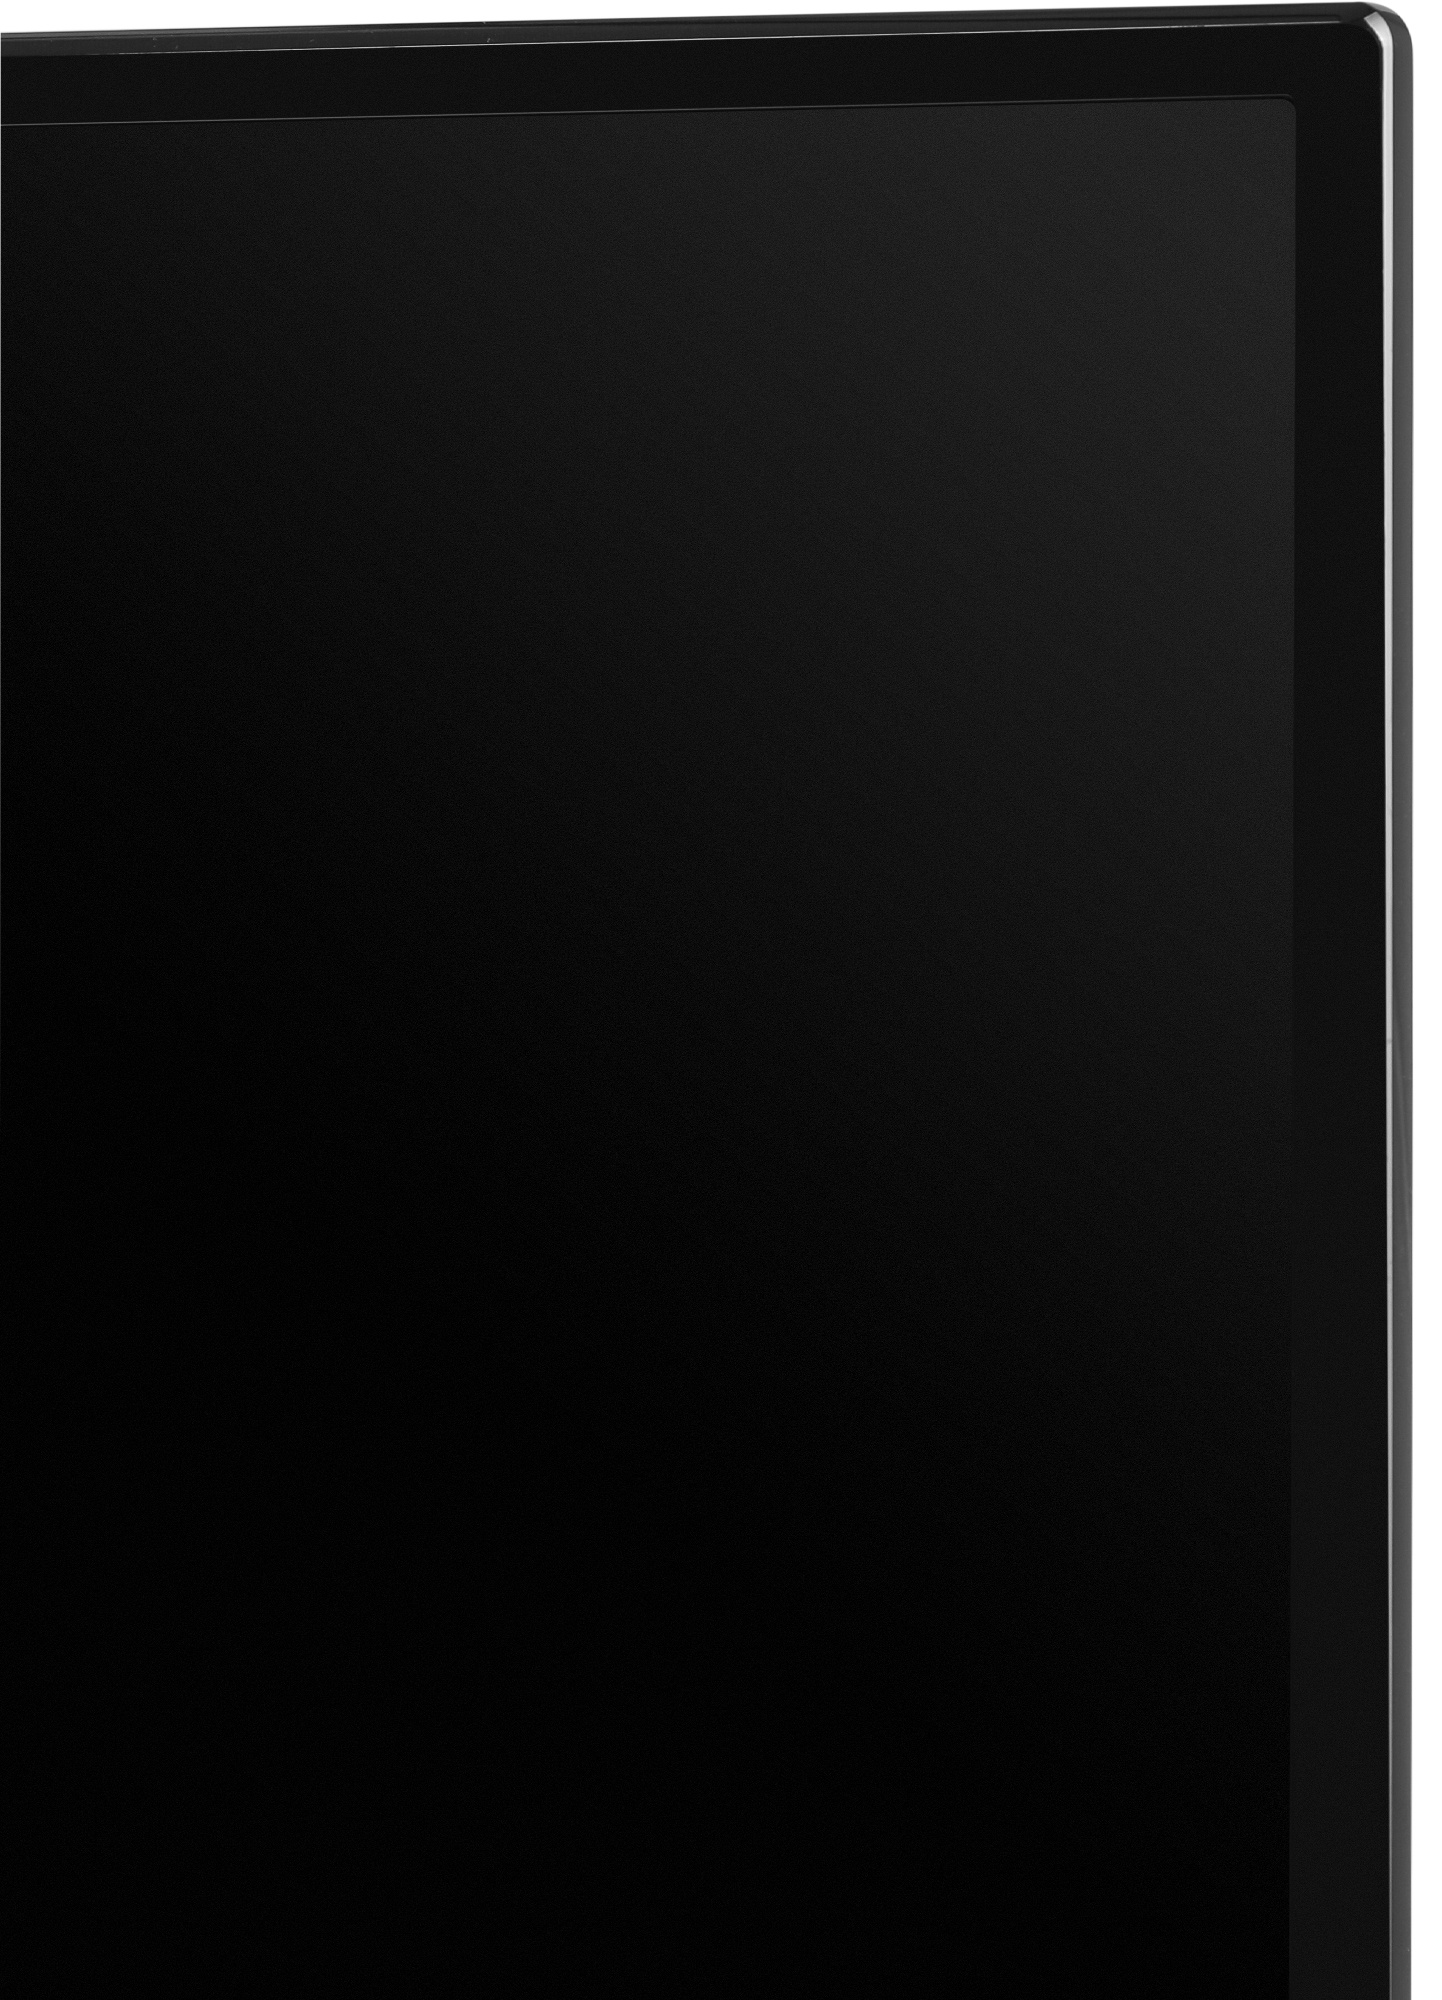 Телевизор Starwind Яндекс.ТВ SW-LED32SG302, 32", LED, HD, черный от магазина Старвинд